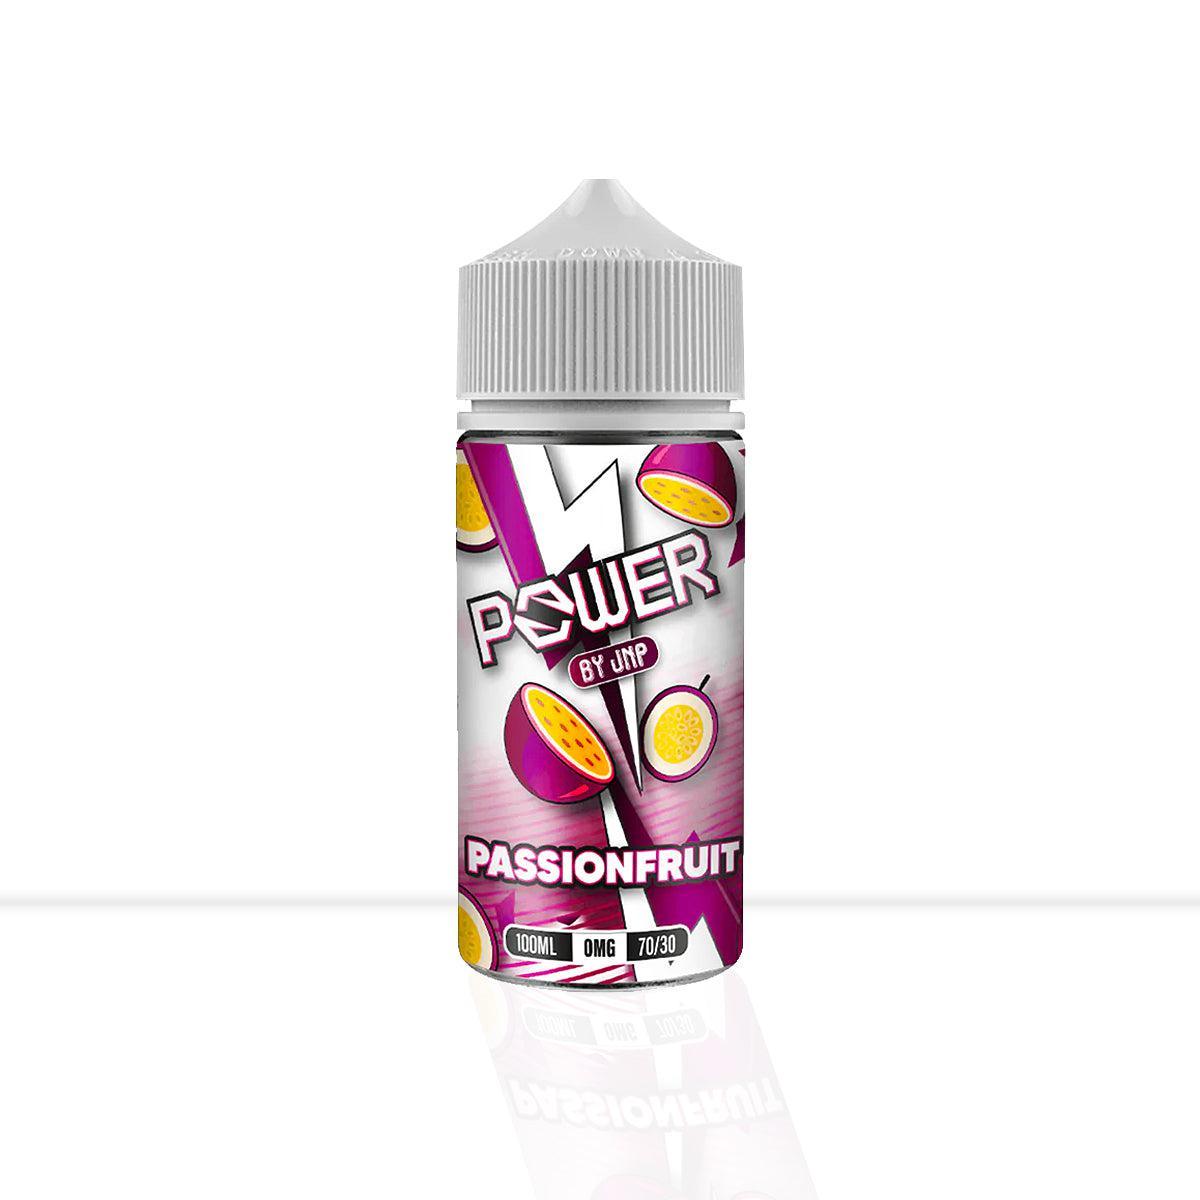 Passionfruit Shortfill Juice N Power - Passionfruit Shortfill Juice N Power - E Liquid